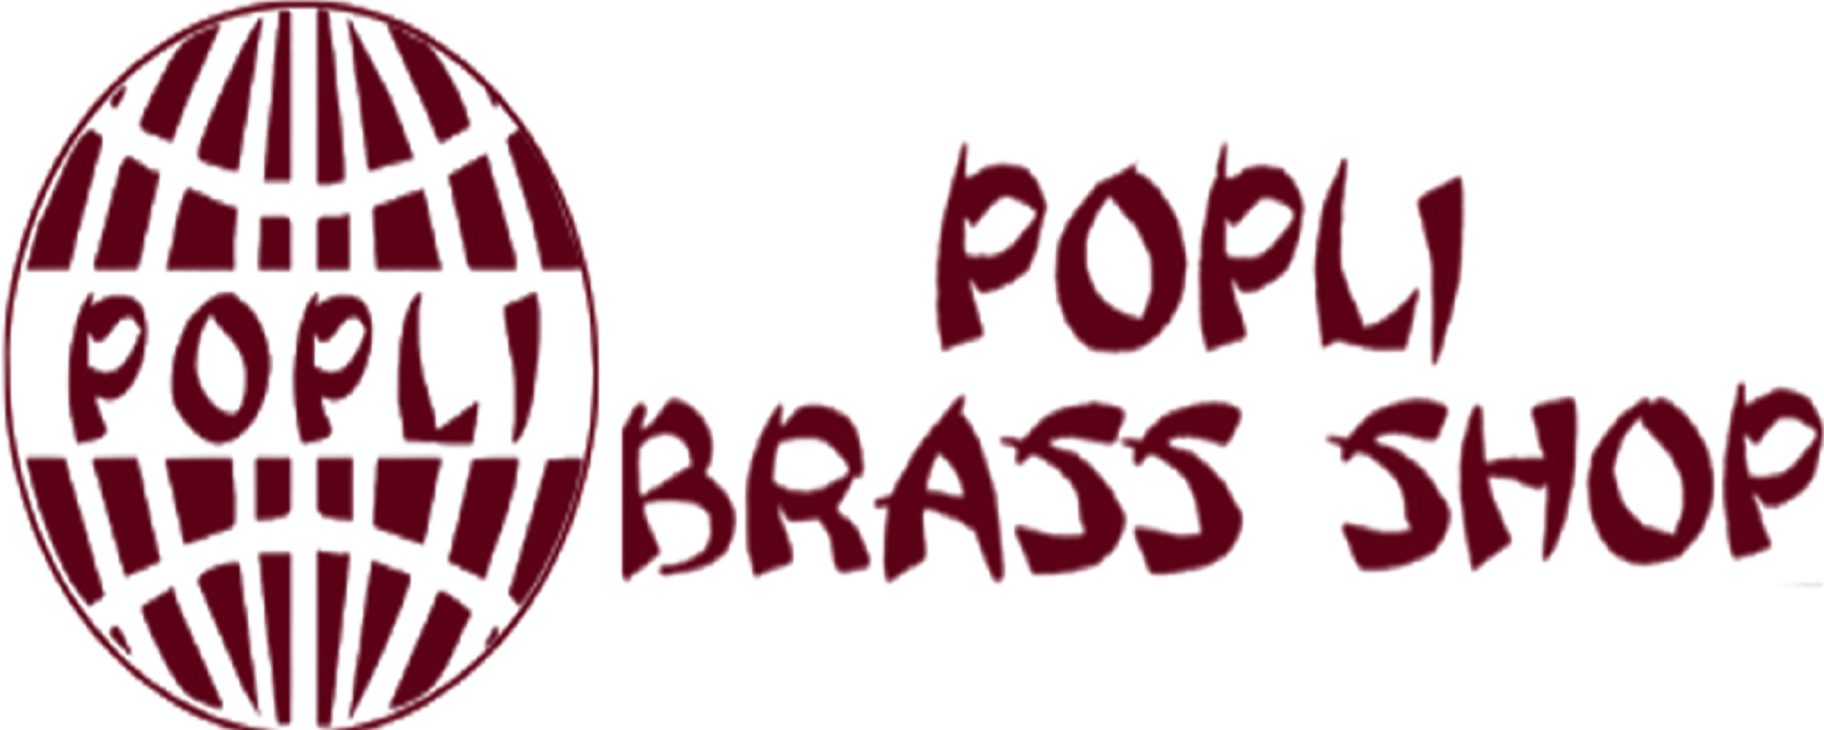 Popli Brass Shop